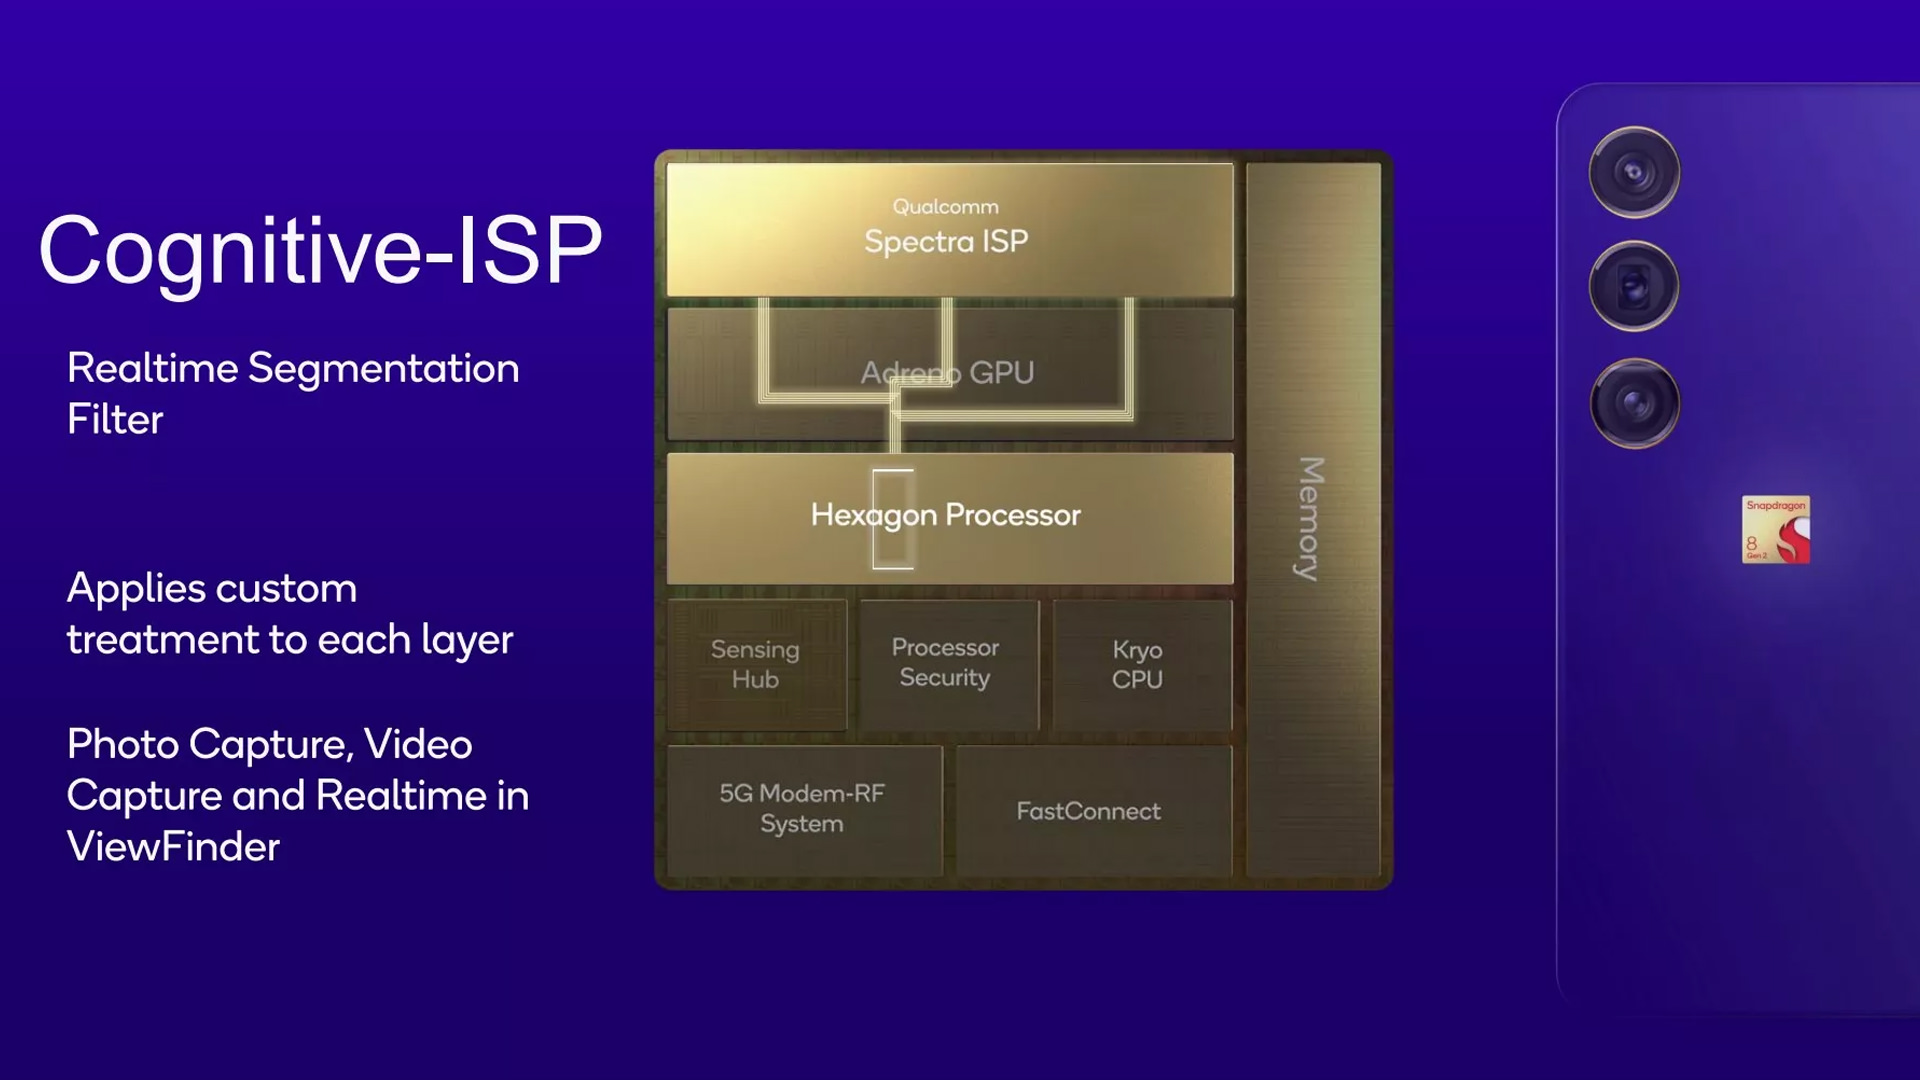 Features of ISP in Qualcomm Snapdragon 8 Gen 2 processor